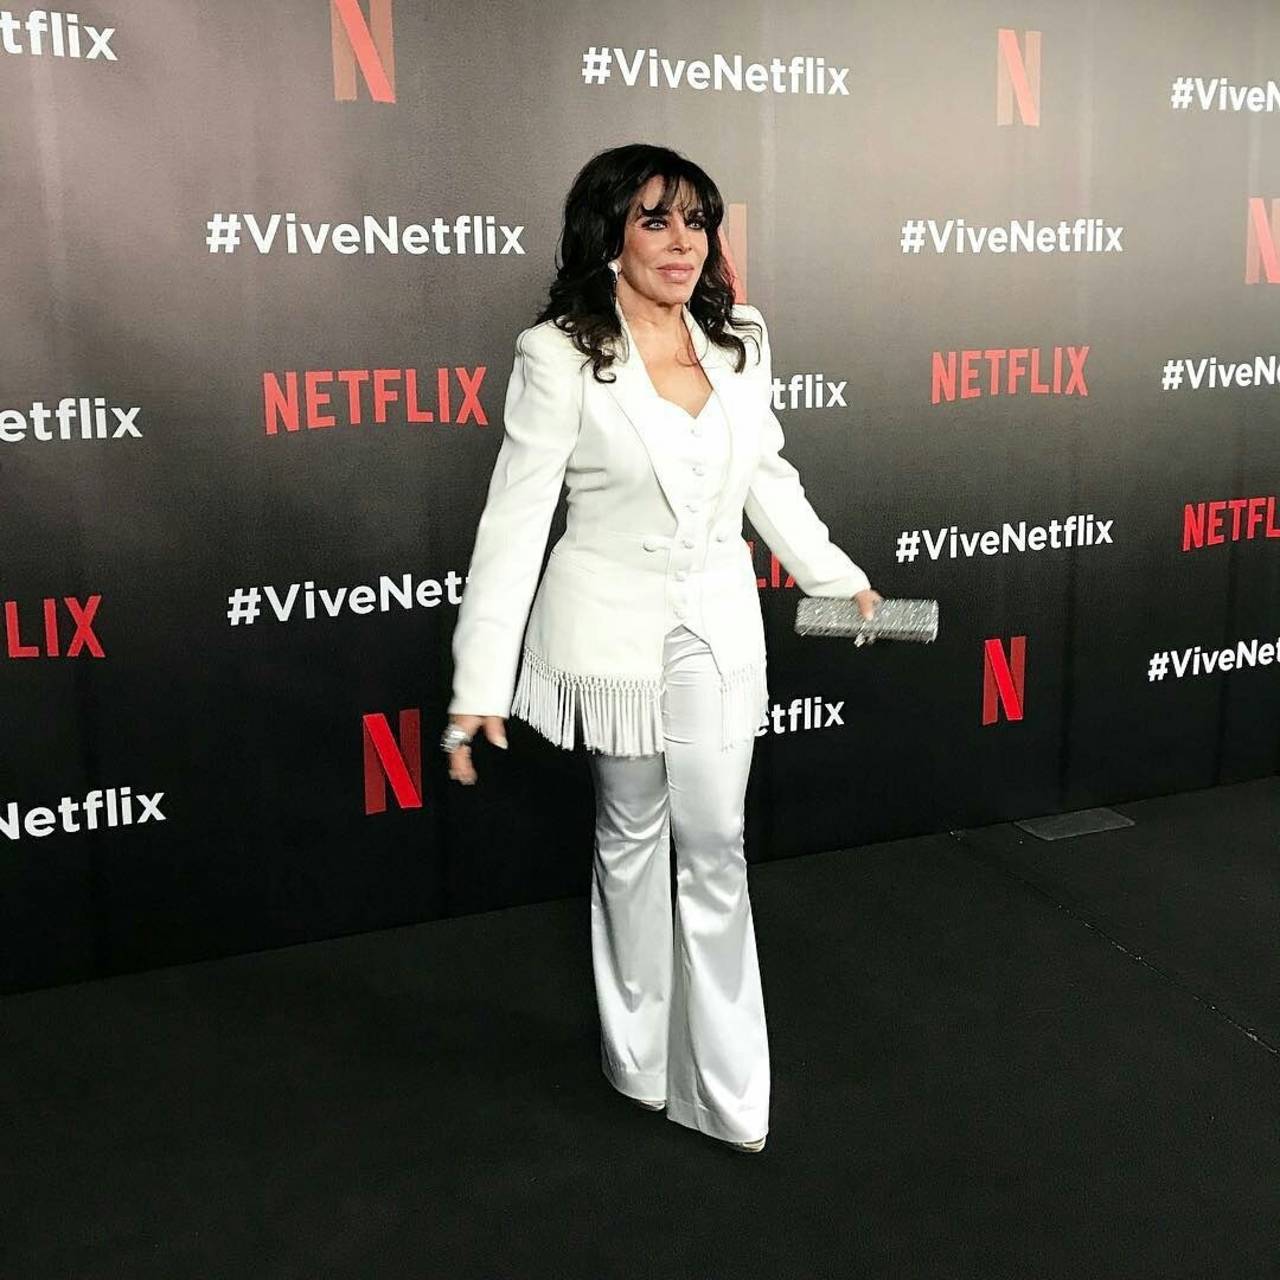 En serie. Verónica Castro vuelve a la actuación de la mano de Manolo Caro y Netflix en la teleserie La casa de las flores. (ESPECIAL)